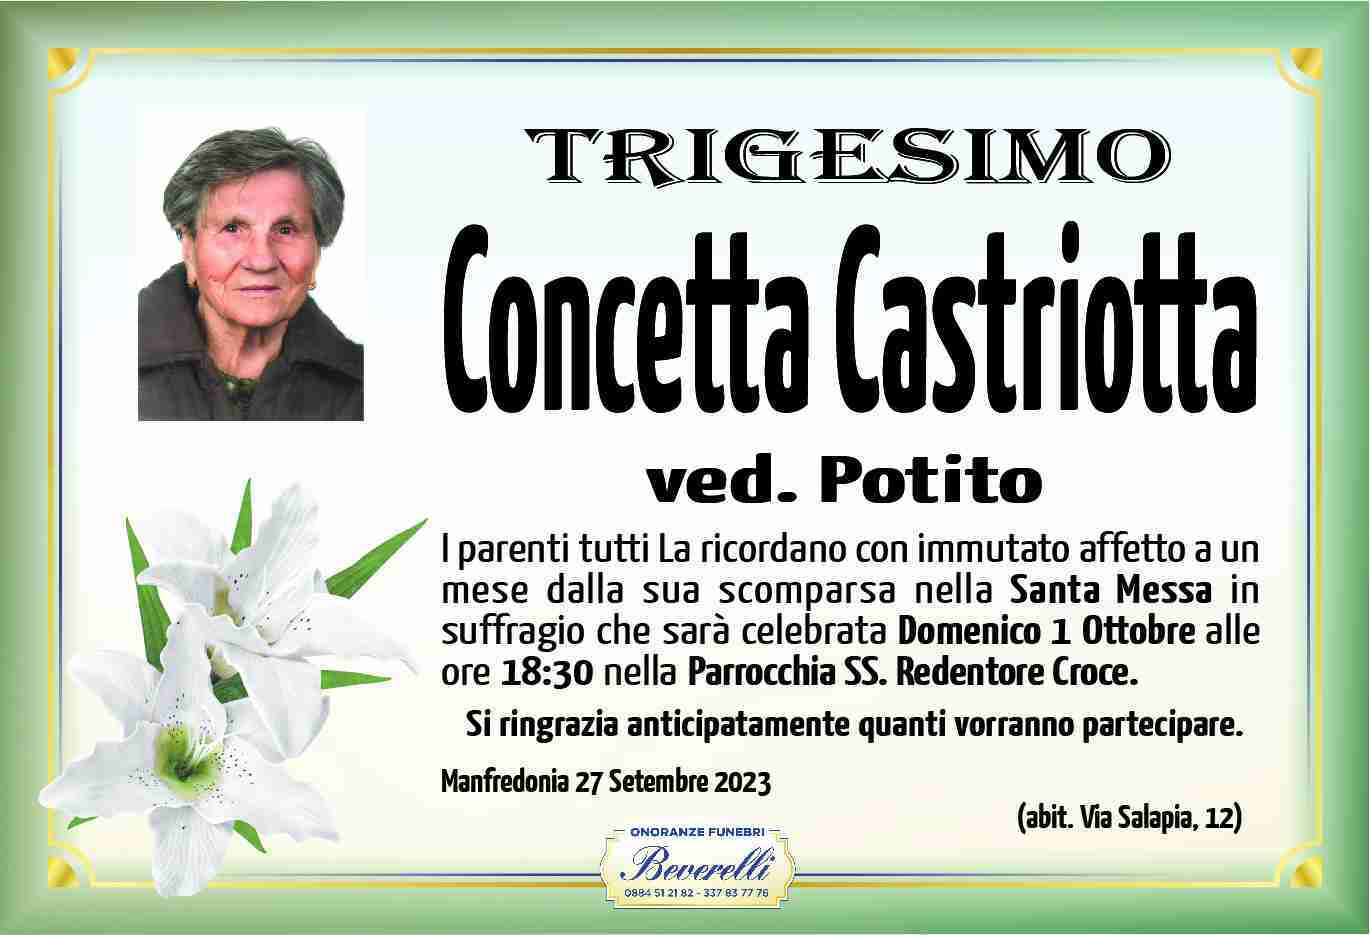 Concetta Castriotta